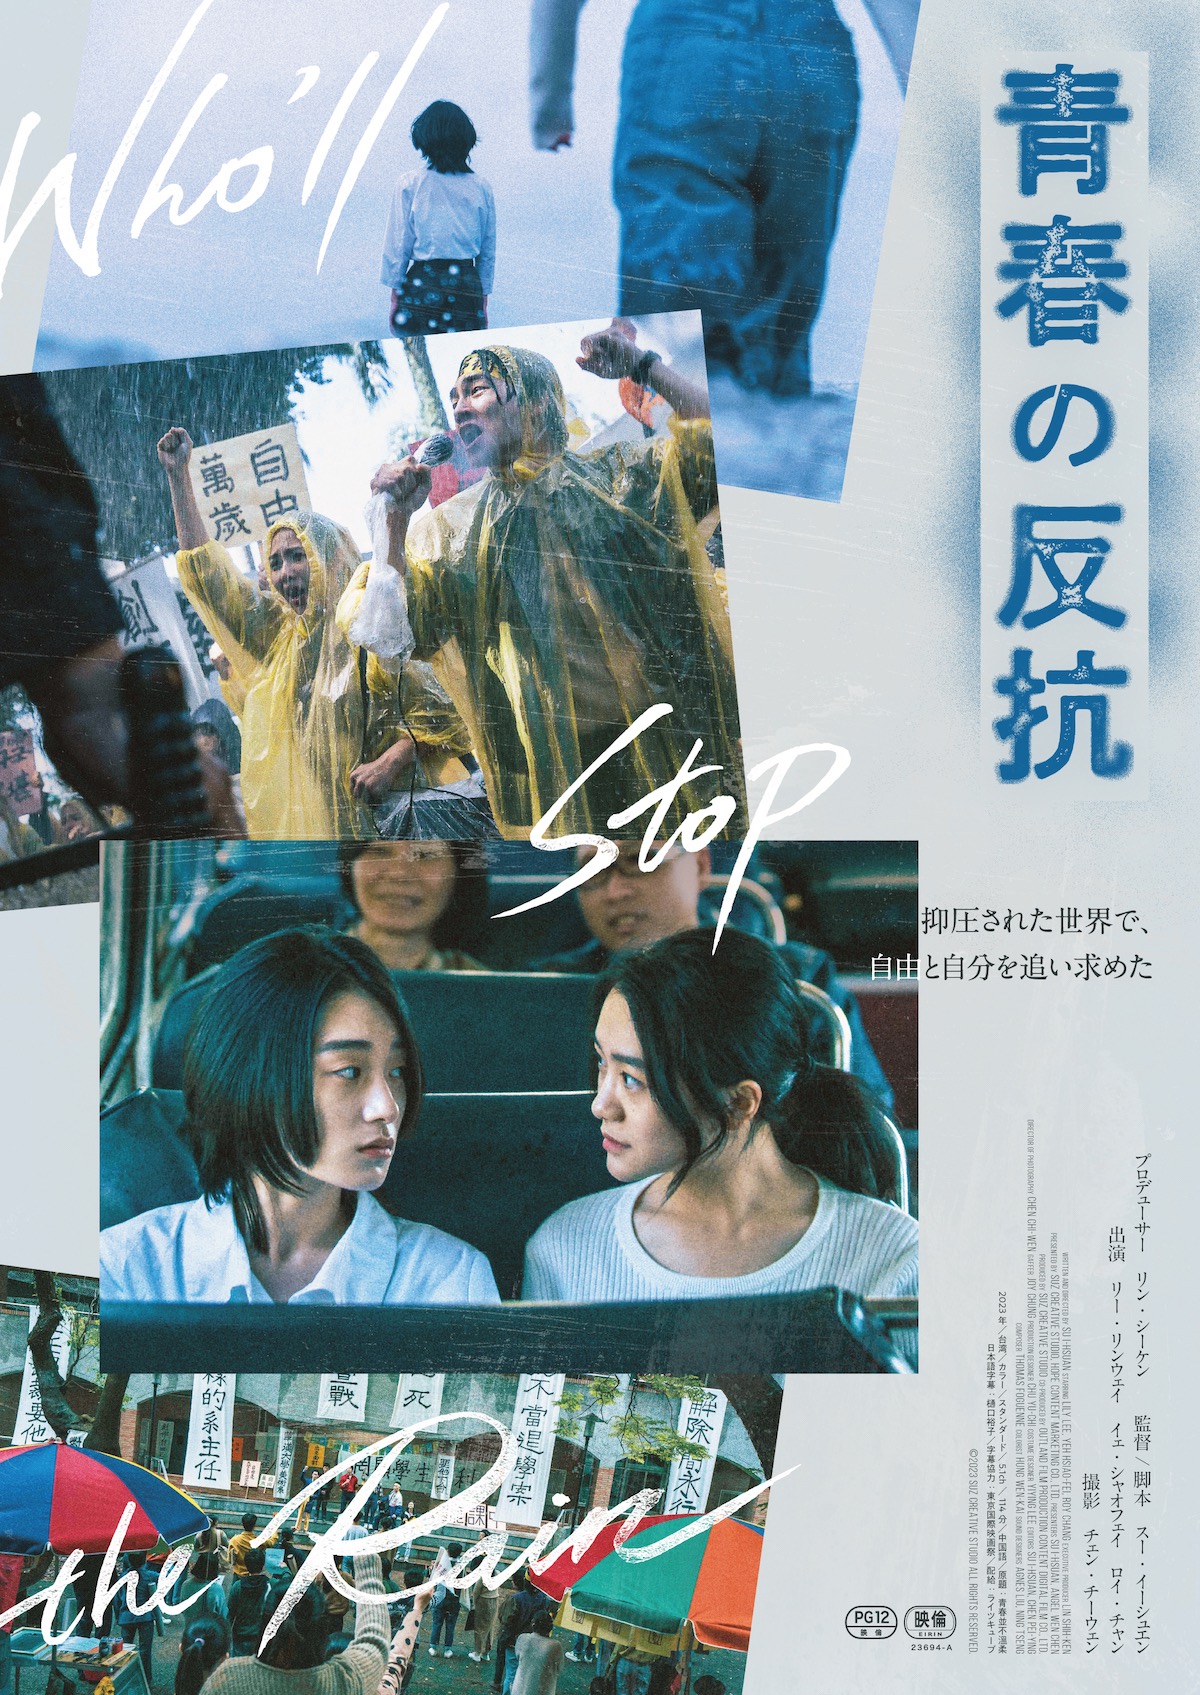 台湾映画『青春の反抗』公開決定